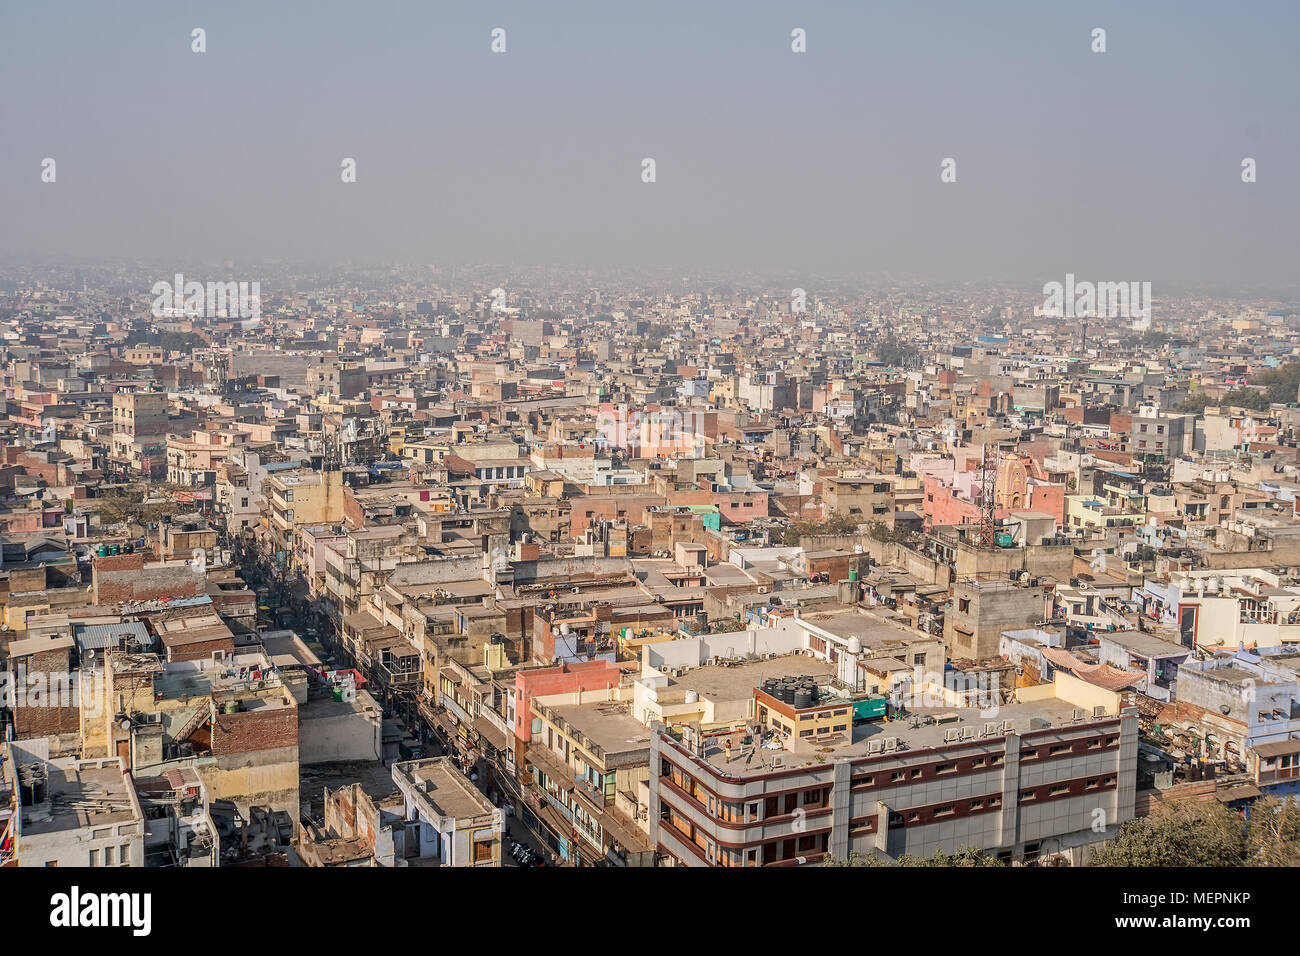 Stadtbild von Old Delhi in Indien. Blick auf das alte Viertel von Neu Delhi.  Umweltverschmutzung und Smog in der Luft. Dächer mit niedrigem Einkommen  schlechte Haus Stockfotografie - Alamy